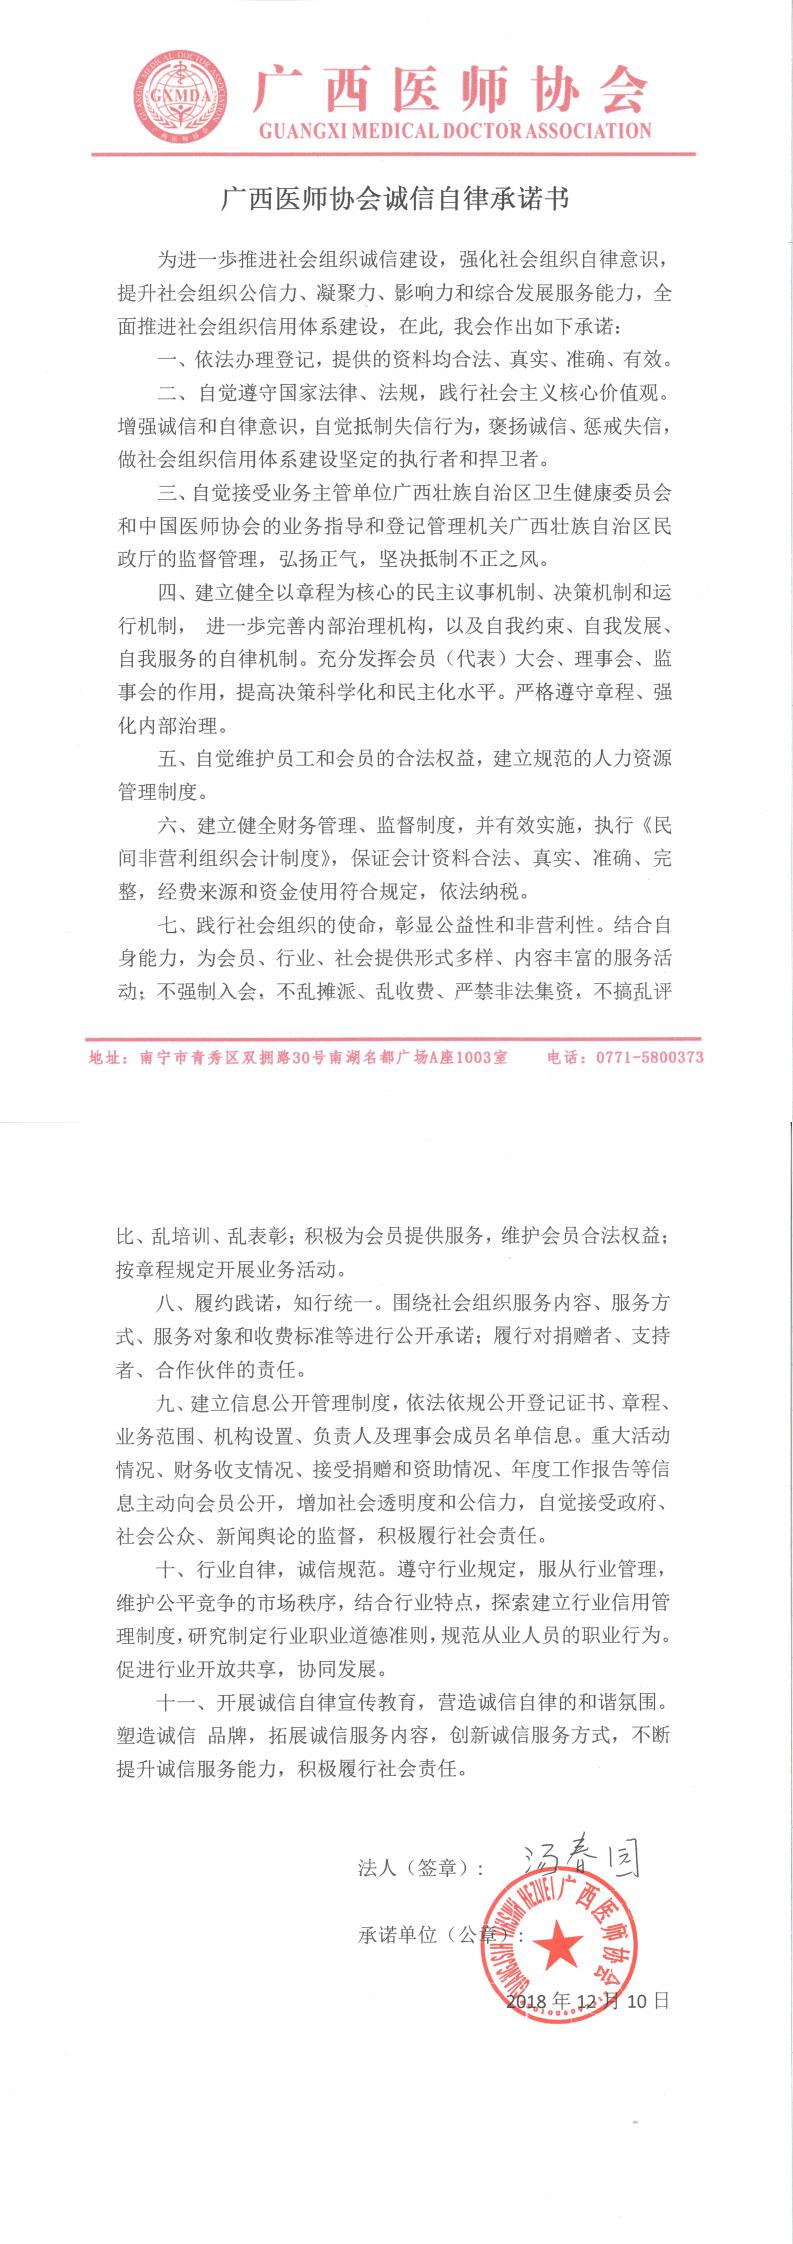 2、广西医师协会诚信自律承诺书-签字盖章（2018.12.10）_0.jpg